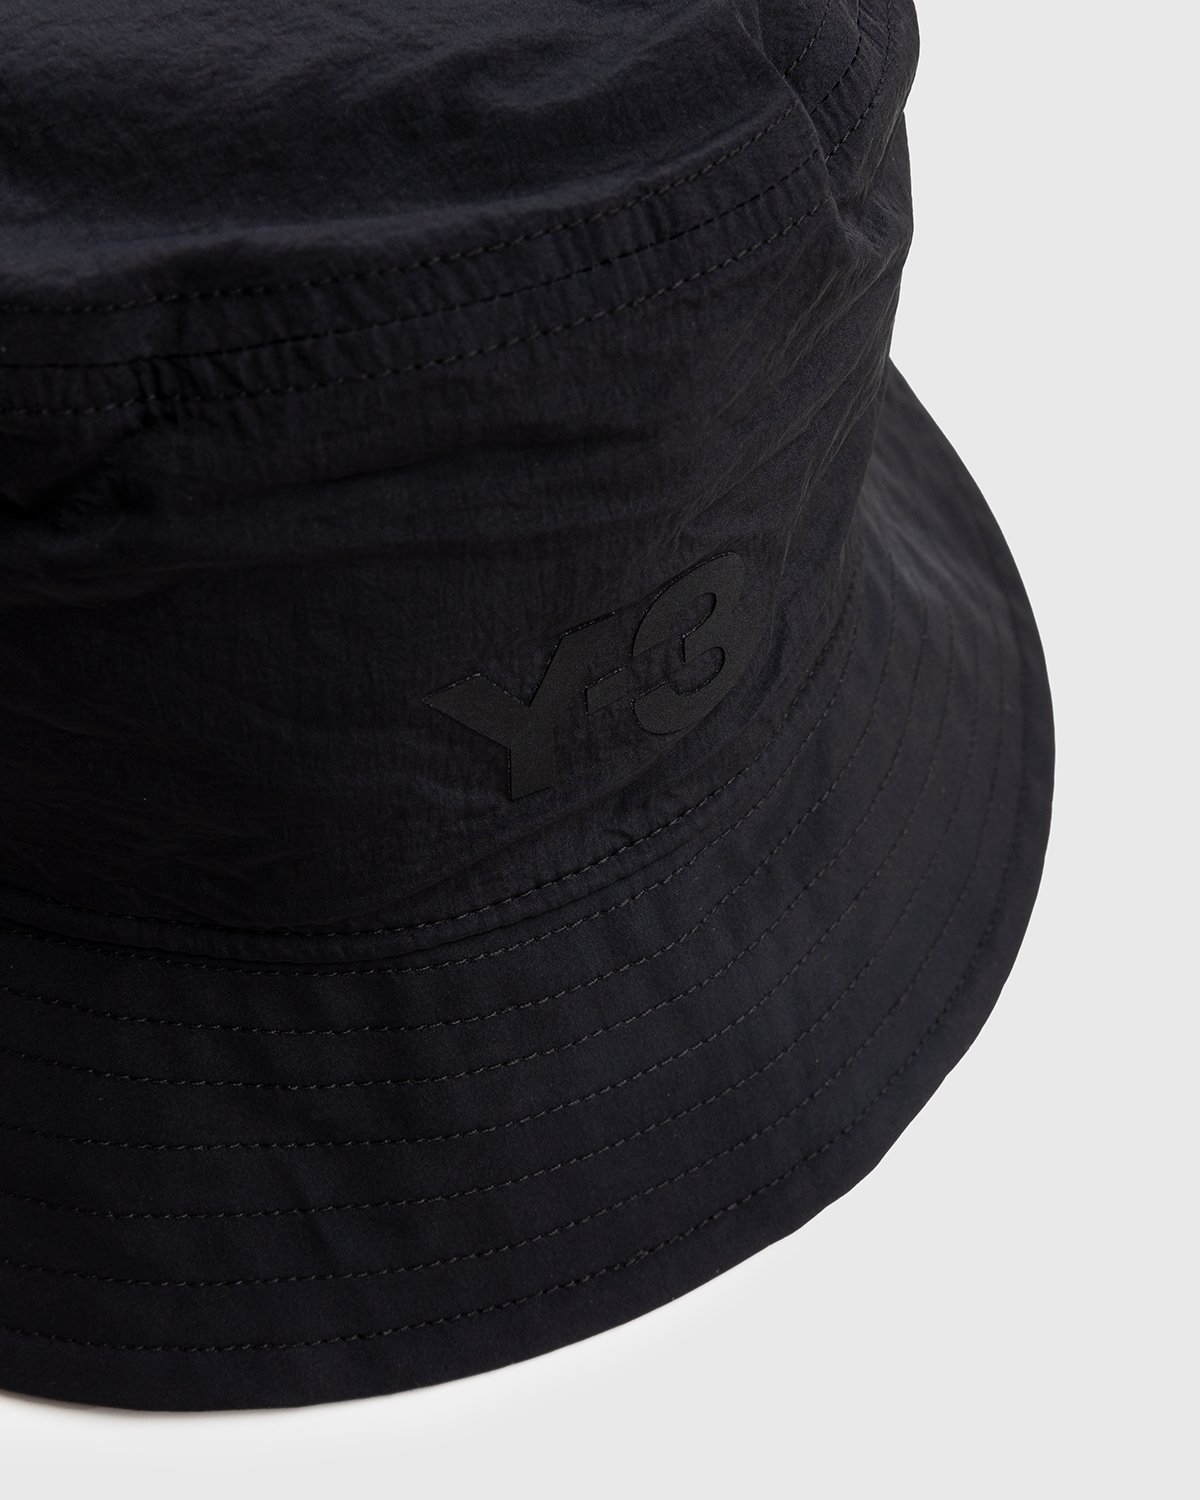 Y-3 - Logo Bucket Hat Black - Accessories - Black - Image 2